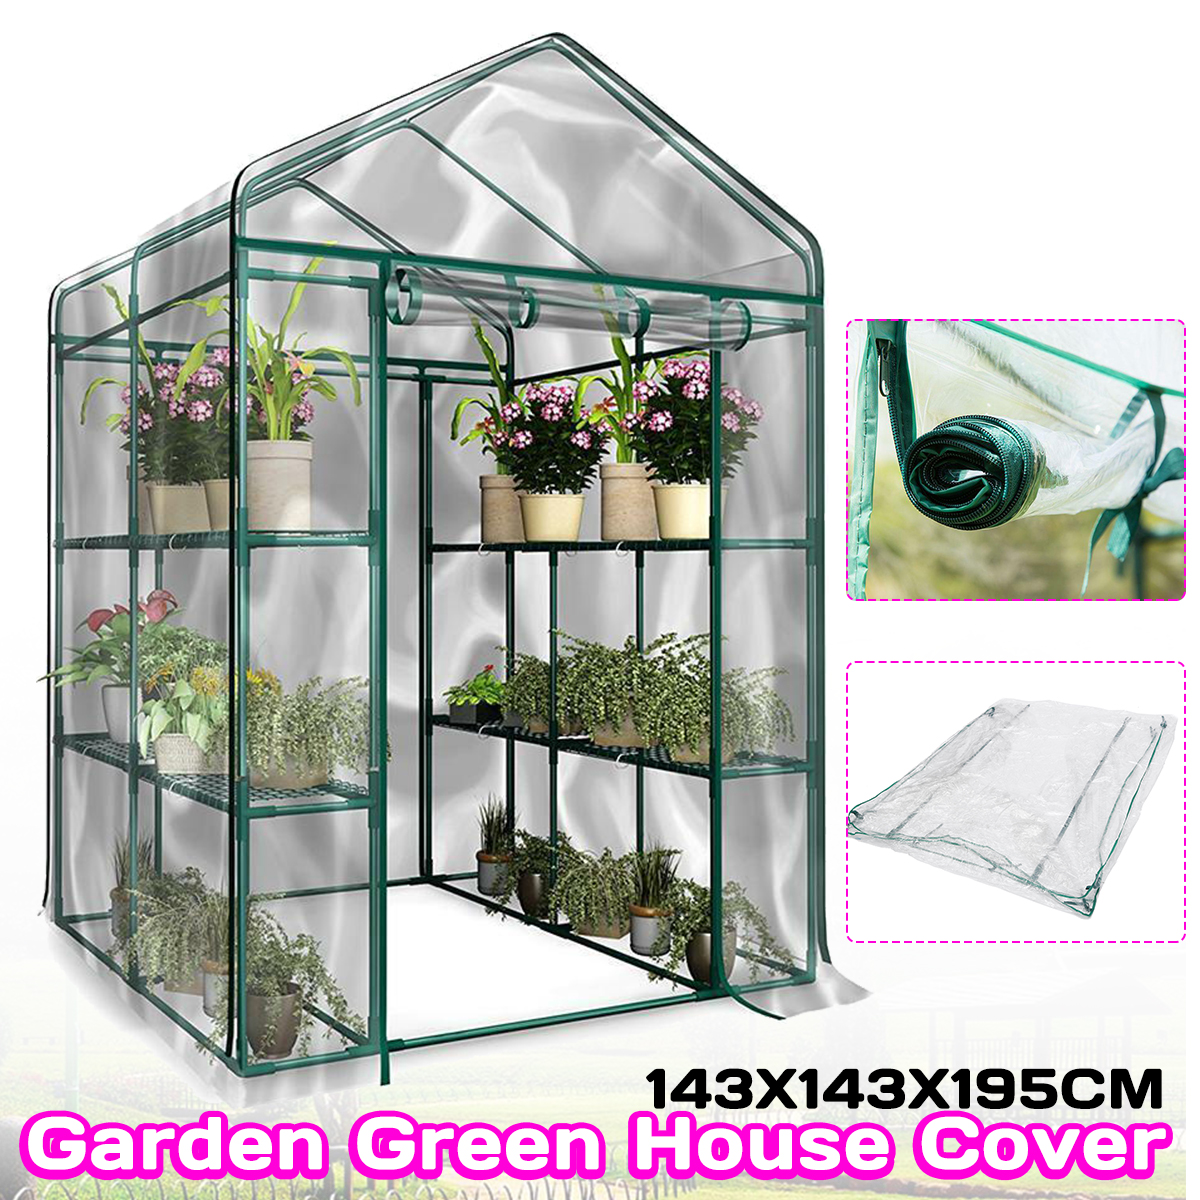 3-Tier-Portable-Greenhouse-6-Shelves-PVC-Cover-Garden-Cover-Plants-Flower-House-143X143X195cm-1551354-3